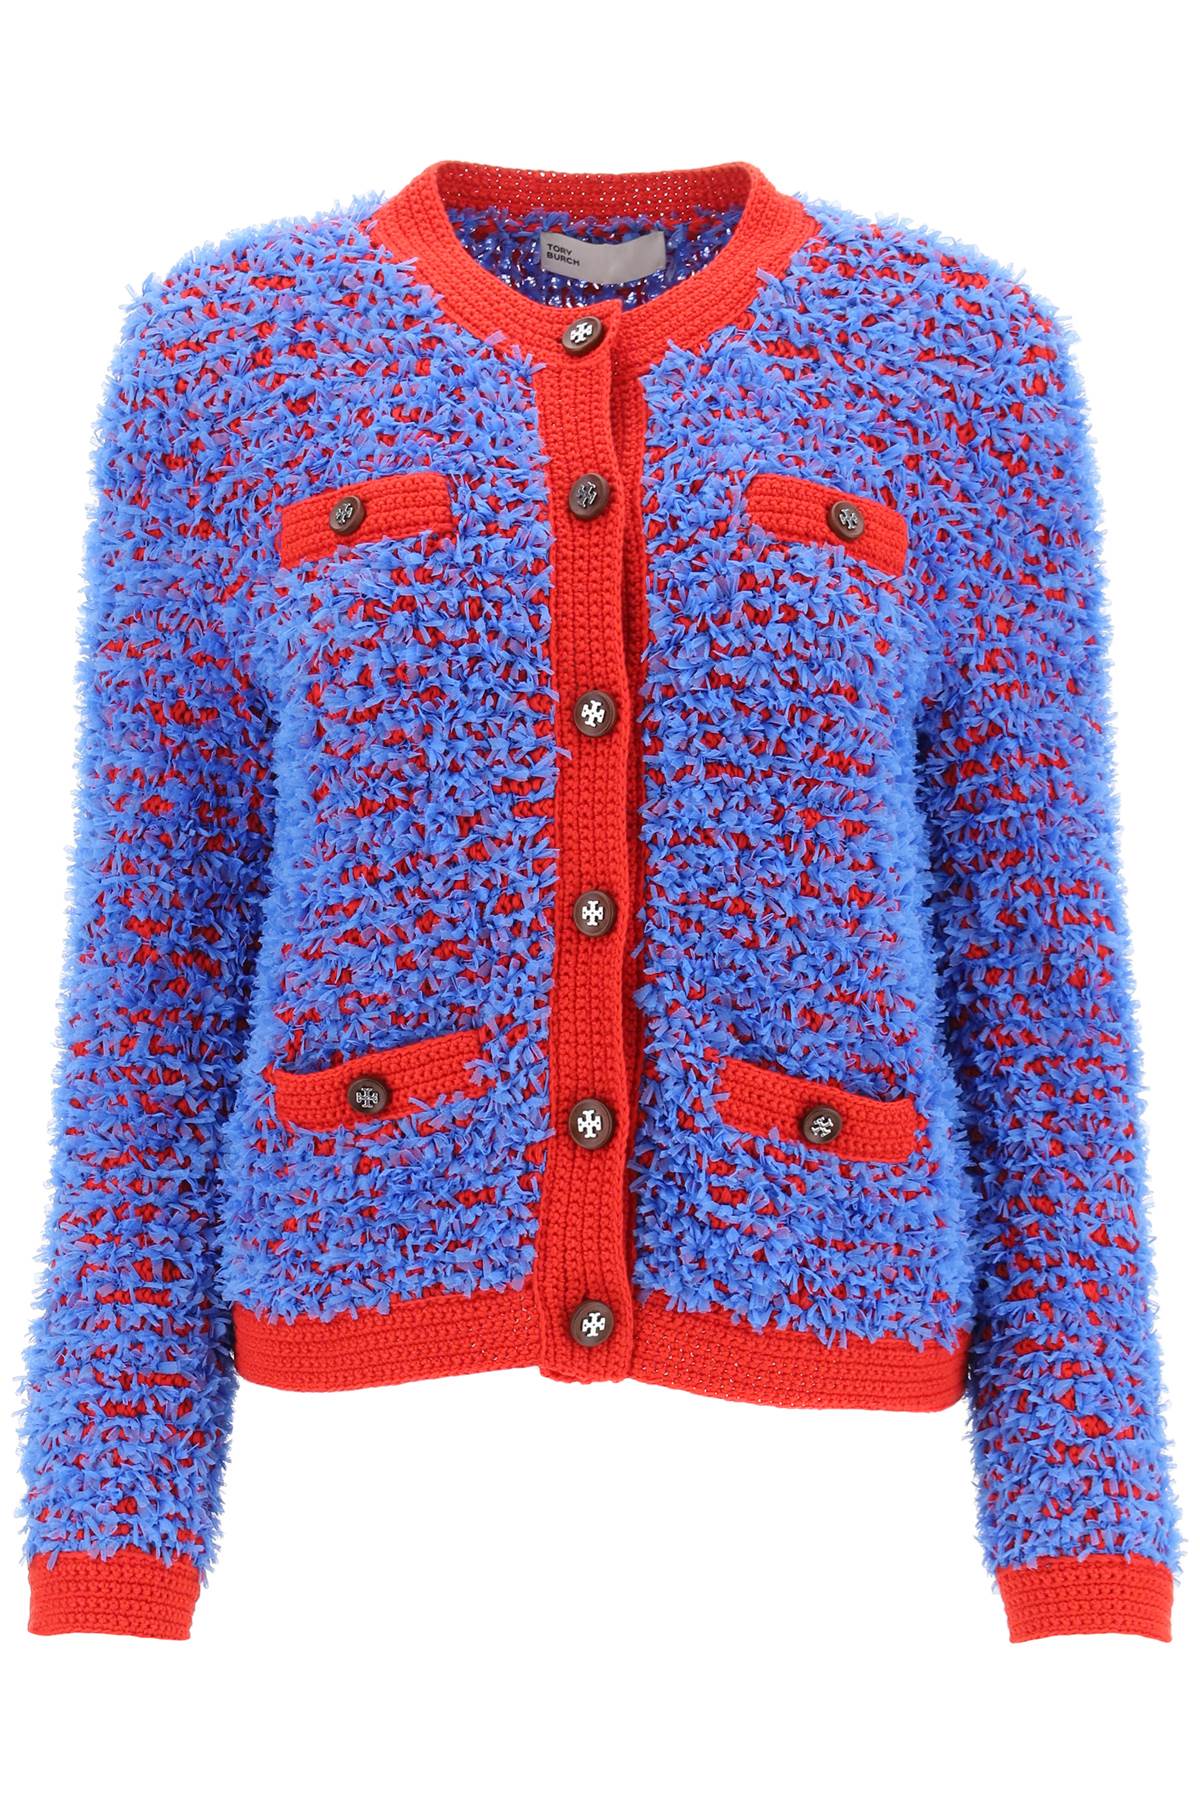 Tory burch confetti tweed jacket-0